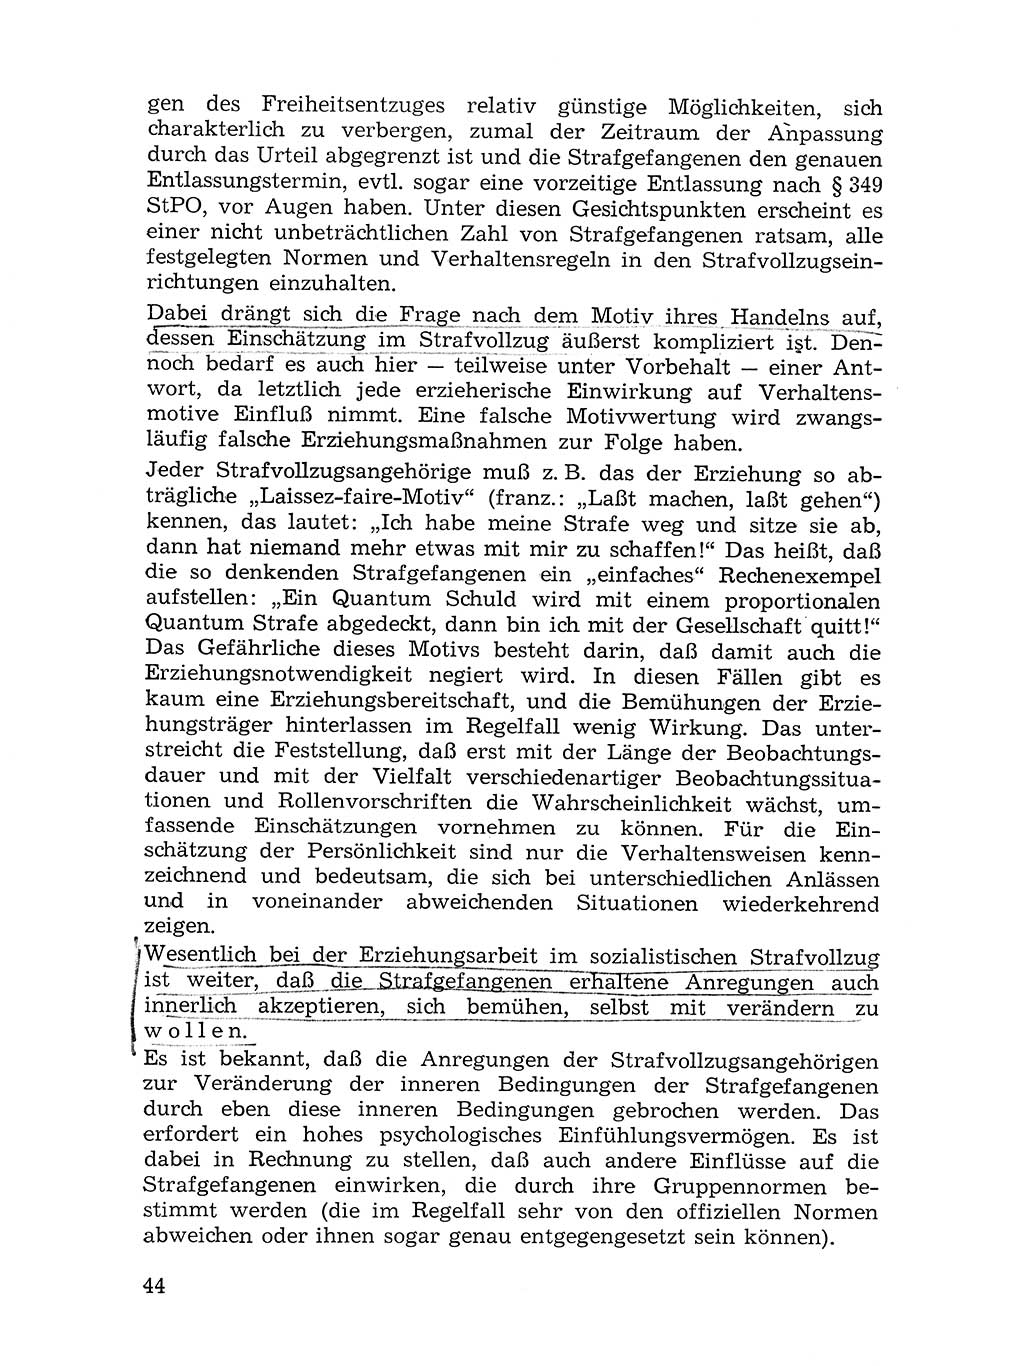 Sozialistischer Strafvollzug (SV) [Deutsche Demokratische Republik (DDR)] 1972, Seite 44 (Soz. SV DDR 1972, S. 44)